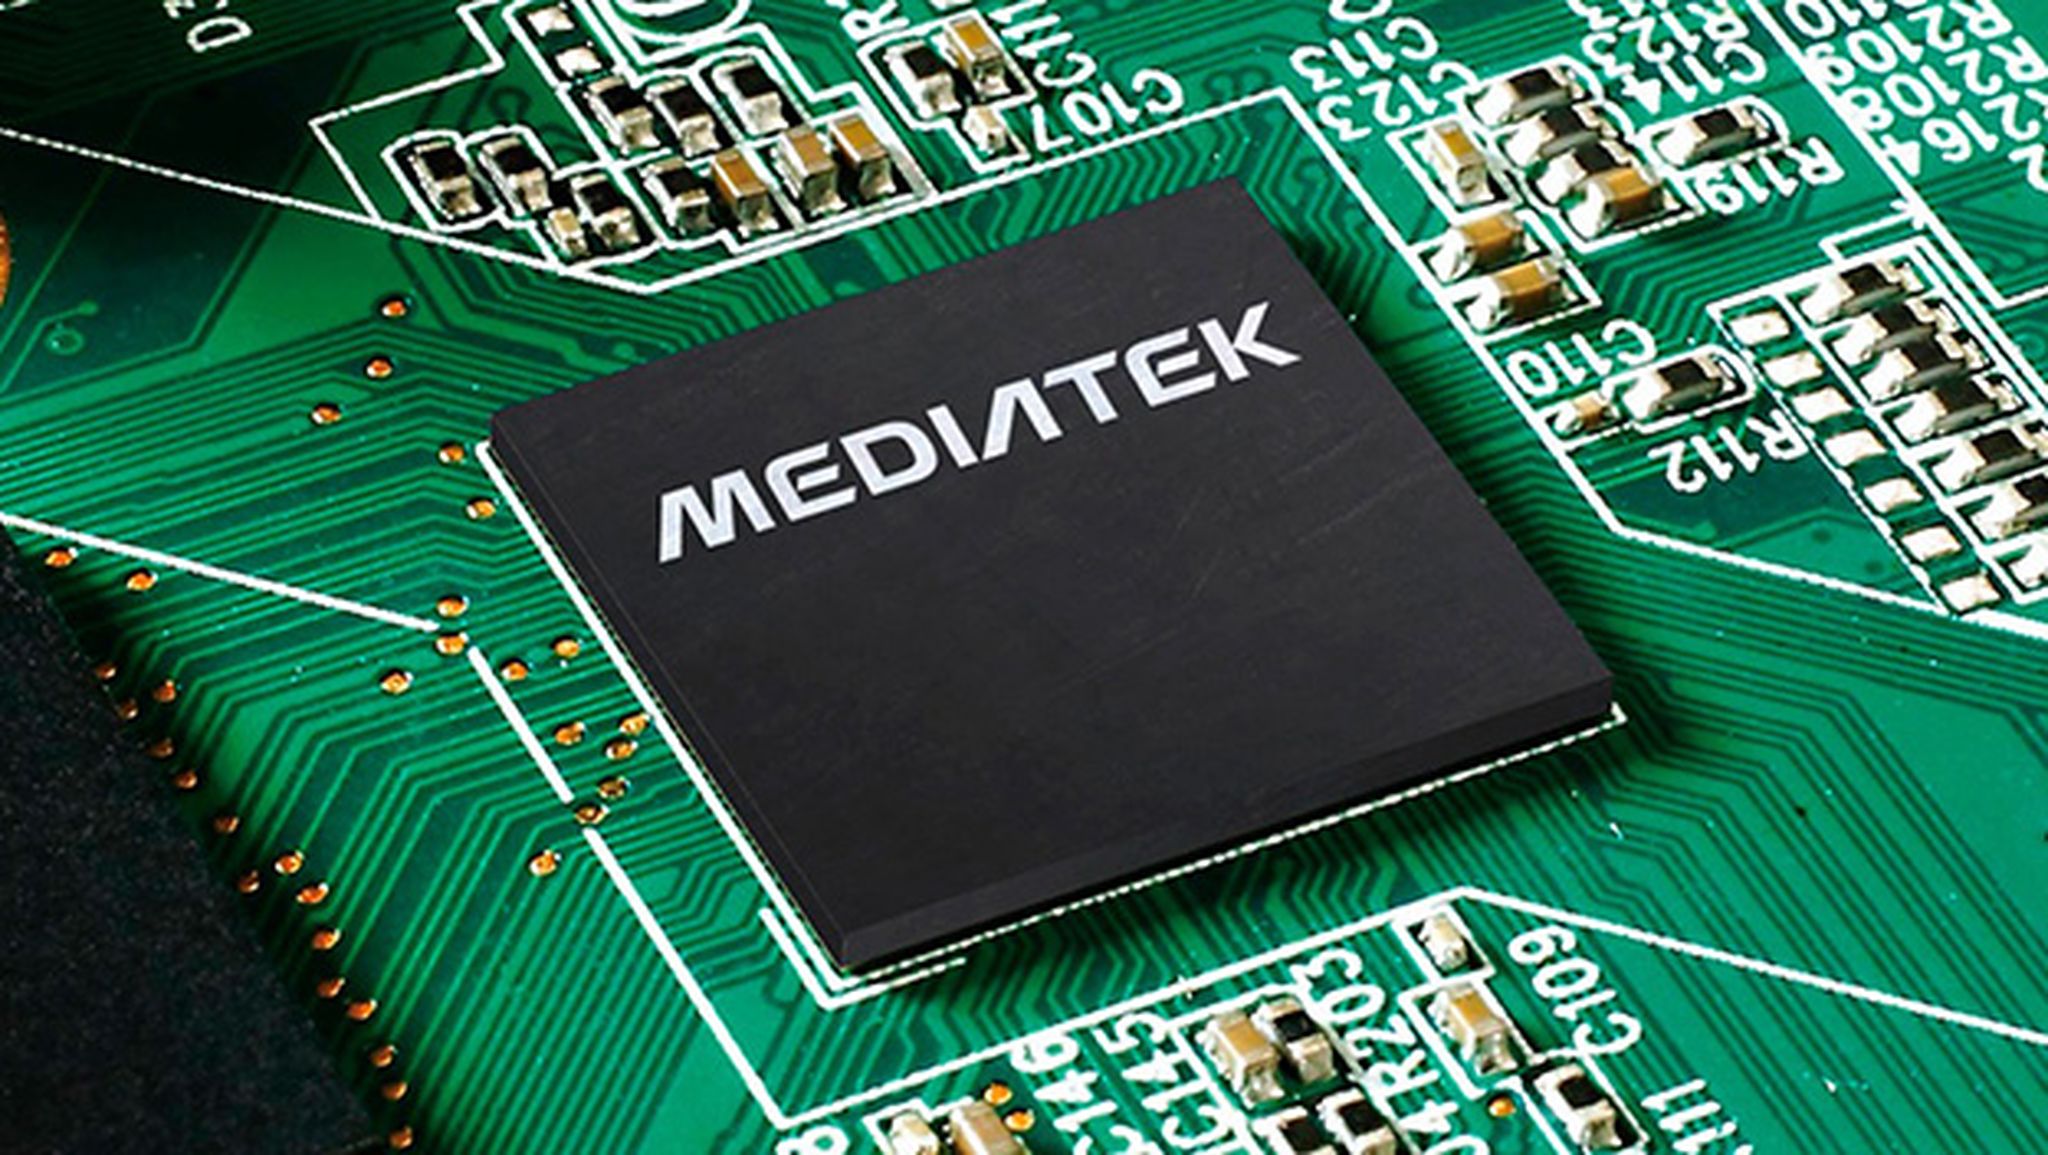 MediaTek busca mayor presencia en el mercado gracias al nuevo procesador Helio P40